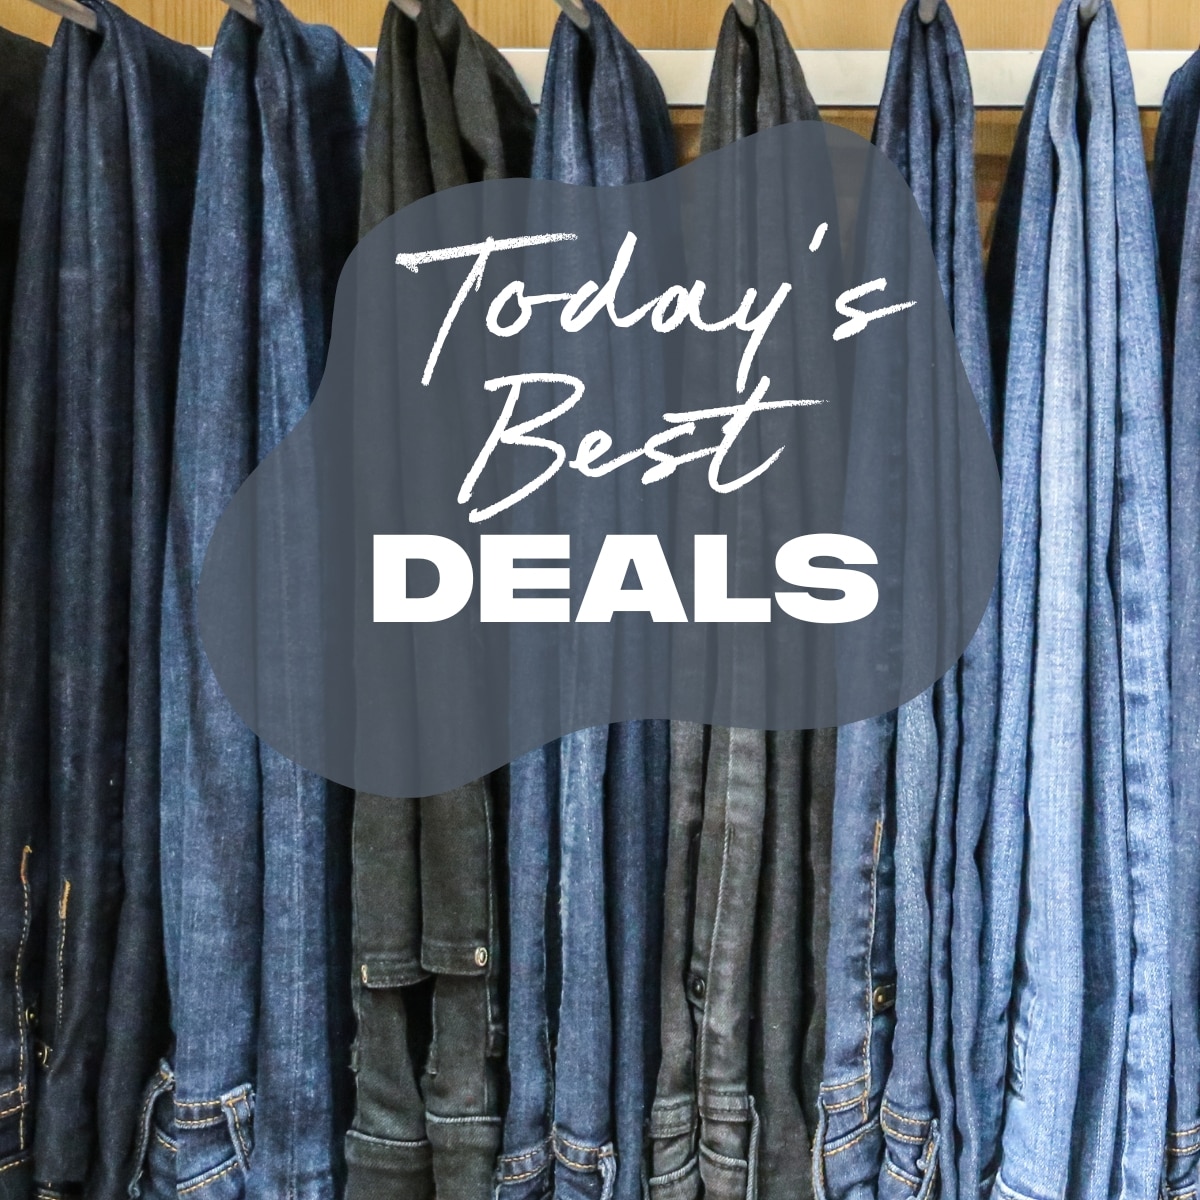 Get 75% off a Coach Bag, 60% off Good American Jeans & More Deals